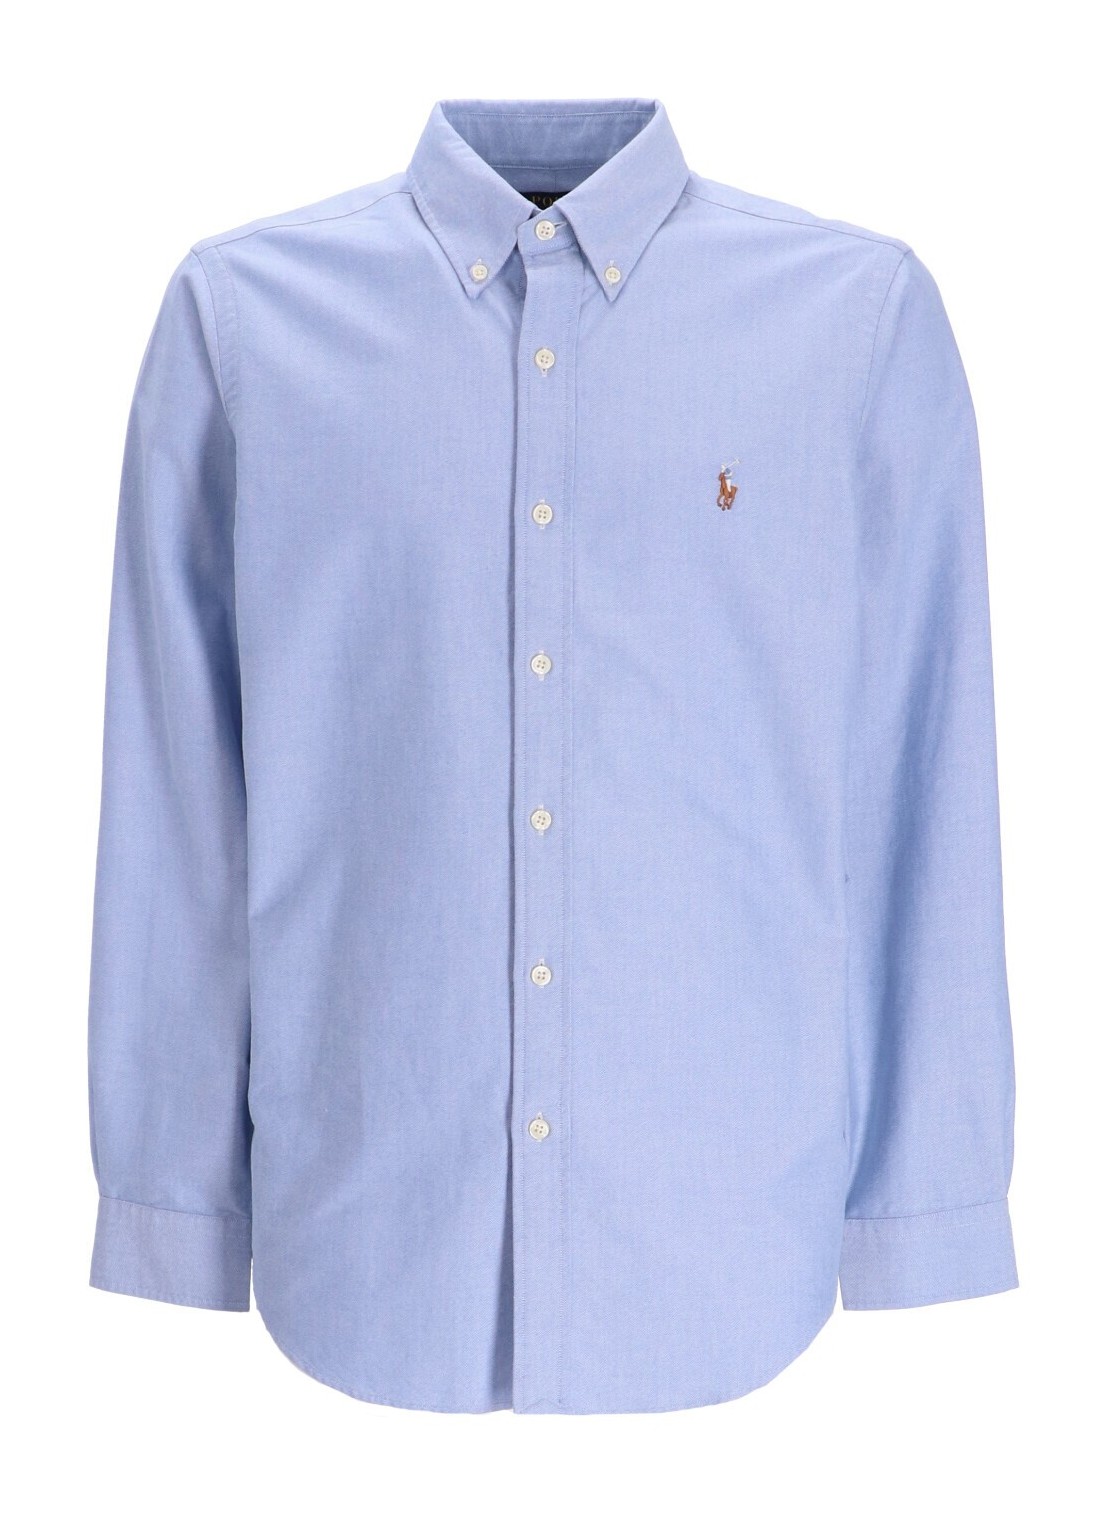 Camiseria polo ralph lauren shirt man cubdppcs-long sleeve-sport shirt 710792041002 blue talla M
 